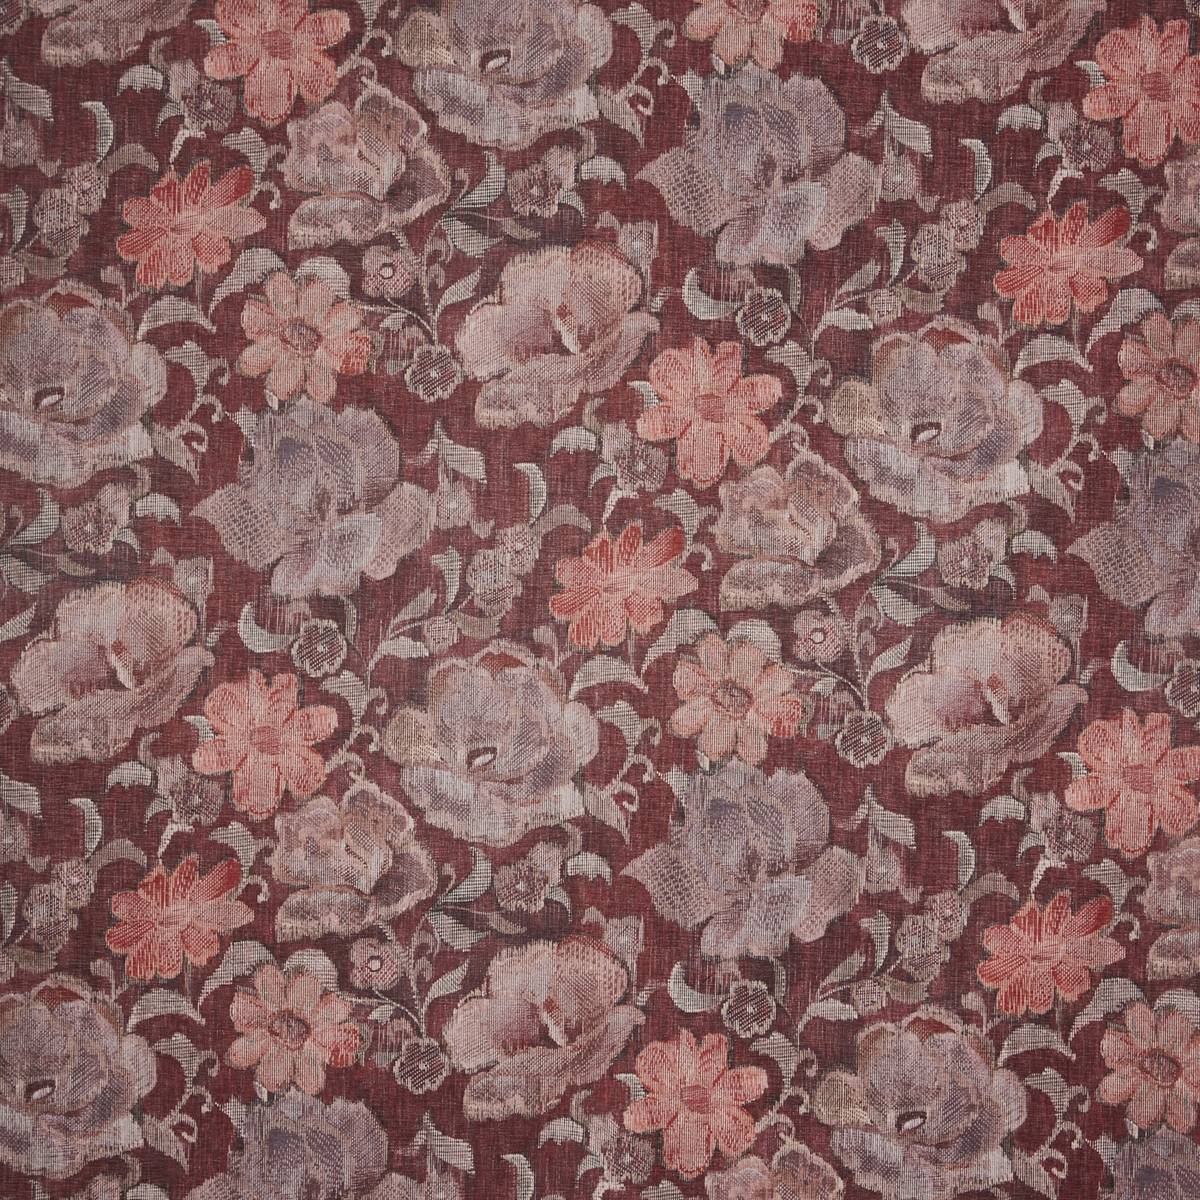 Labyrinth Ruby Fabric by Prestigious Textiles